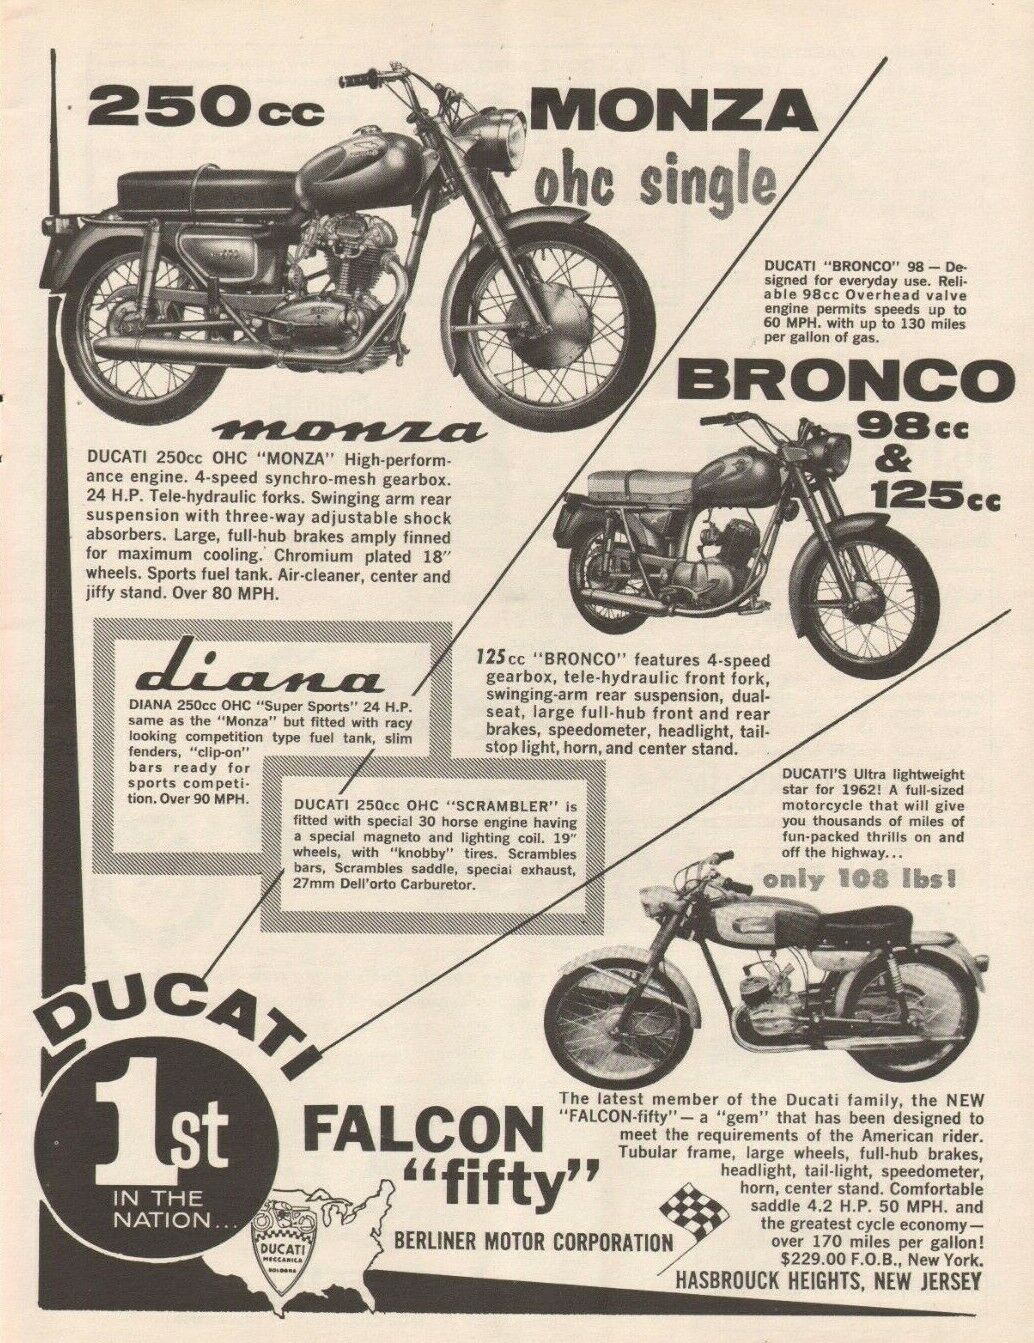 1963 Ducati Monza, Bronco, Diana, Falcon 50 Fifty - Vintage Motorcycle Ad